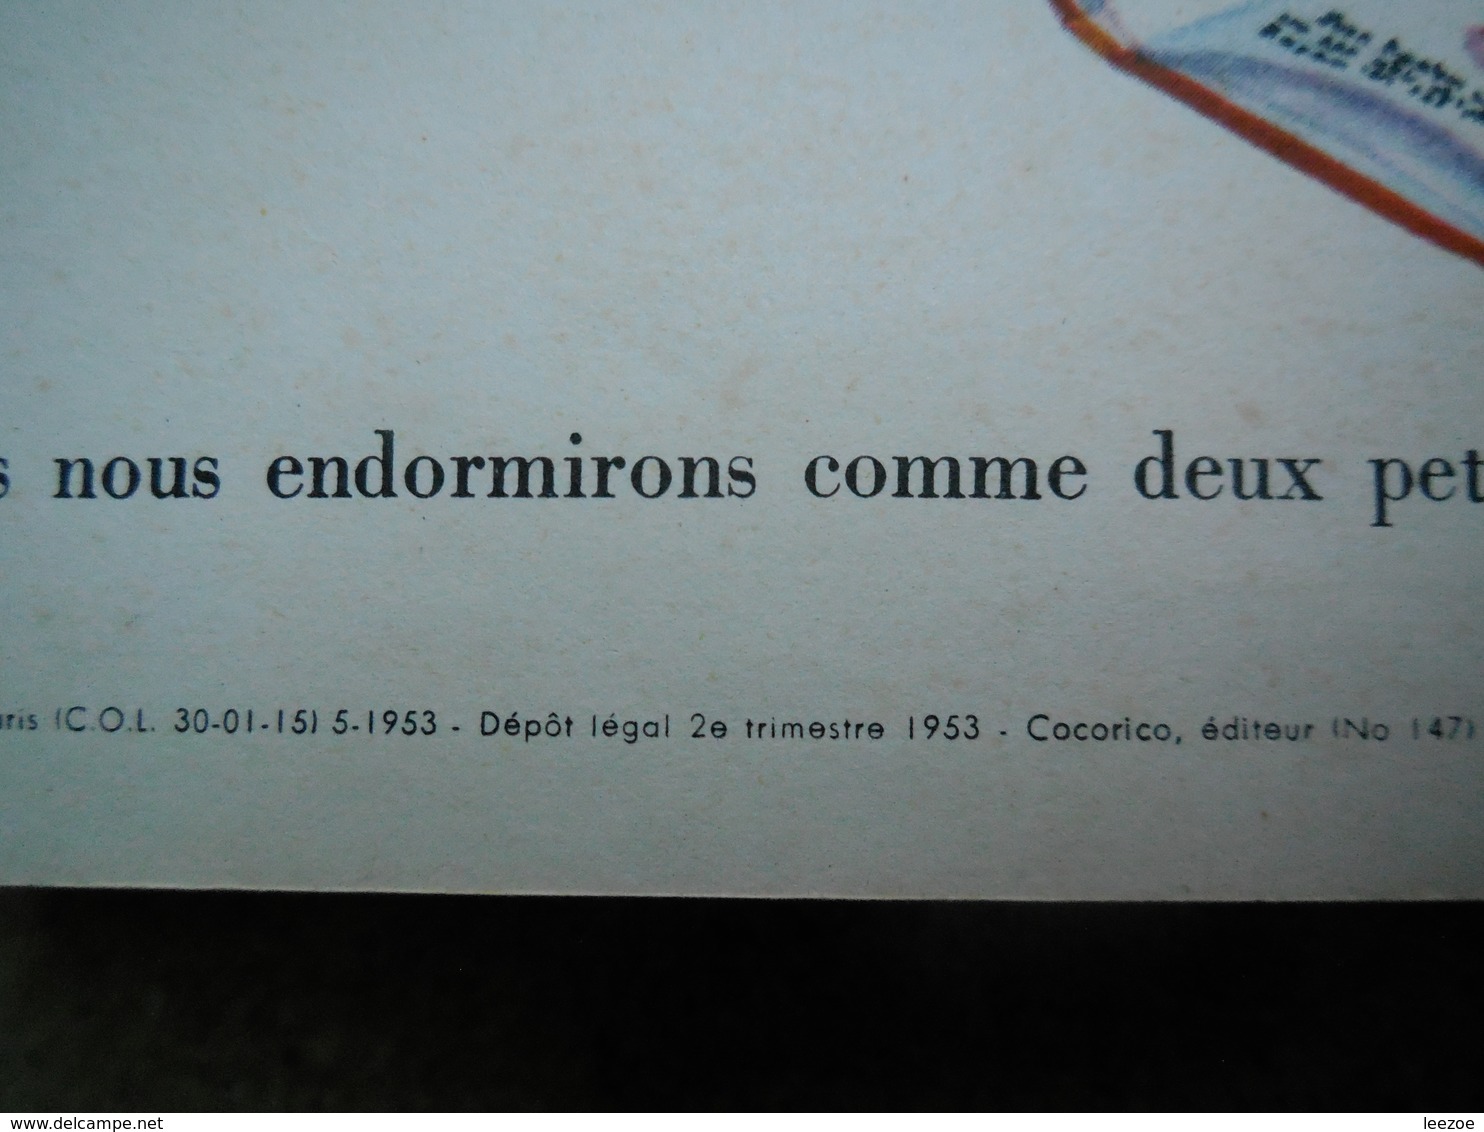 un petit livre d'or mon petit chat EO française 1953.....4A010320